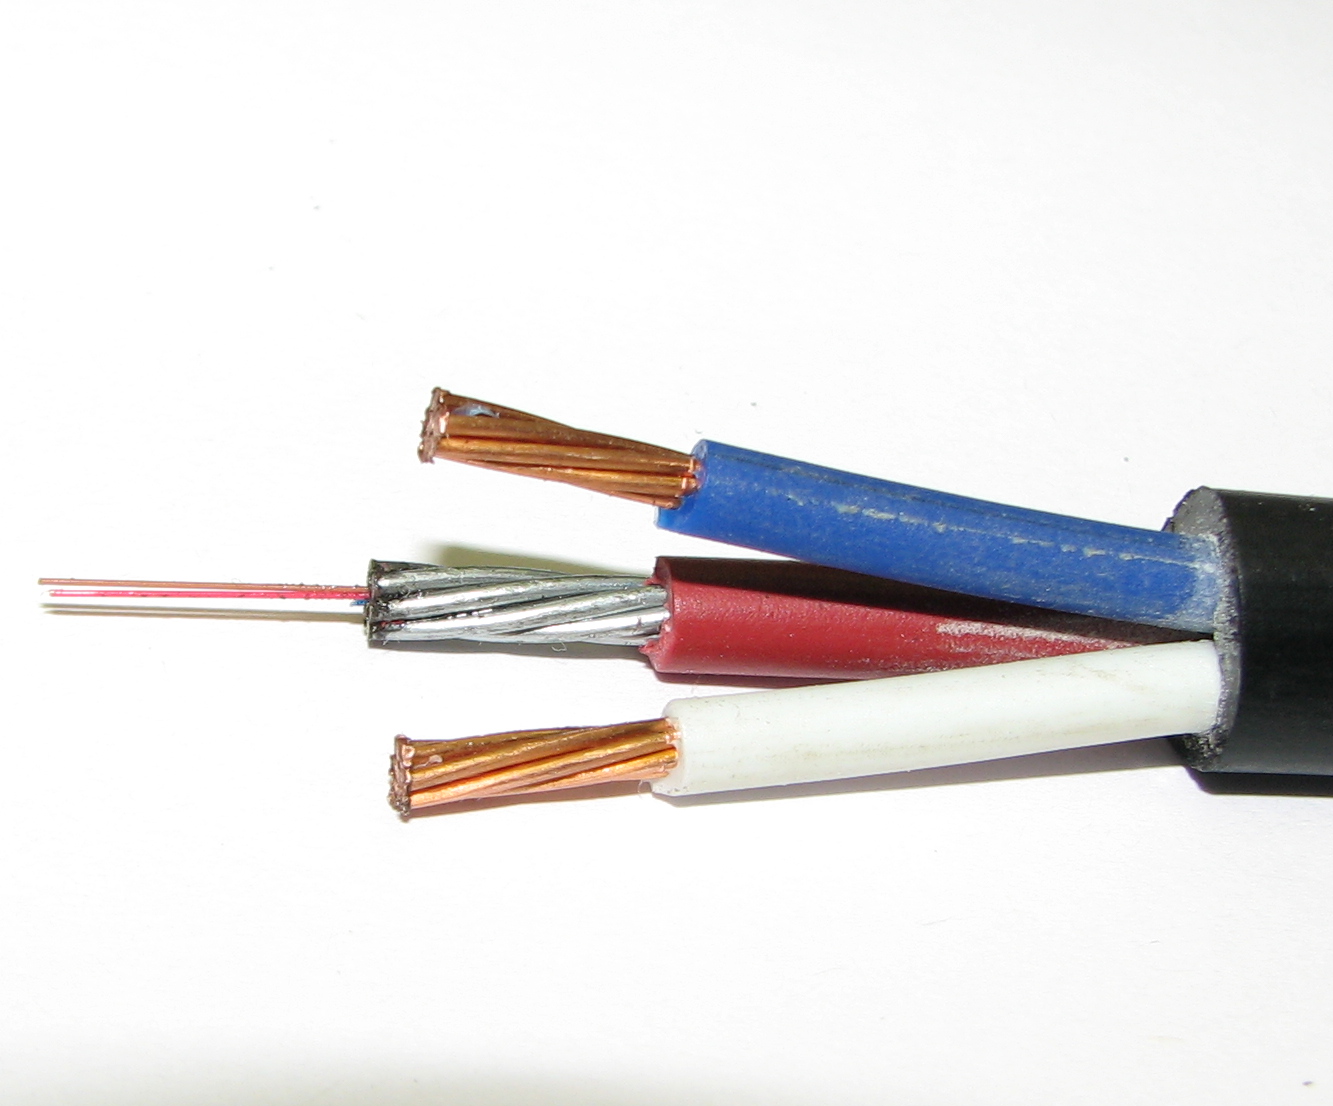 Оптоэлектрический кабель СЛ-ОЭК-НУ-(03-4Е2-3,5)+2х2,5)